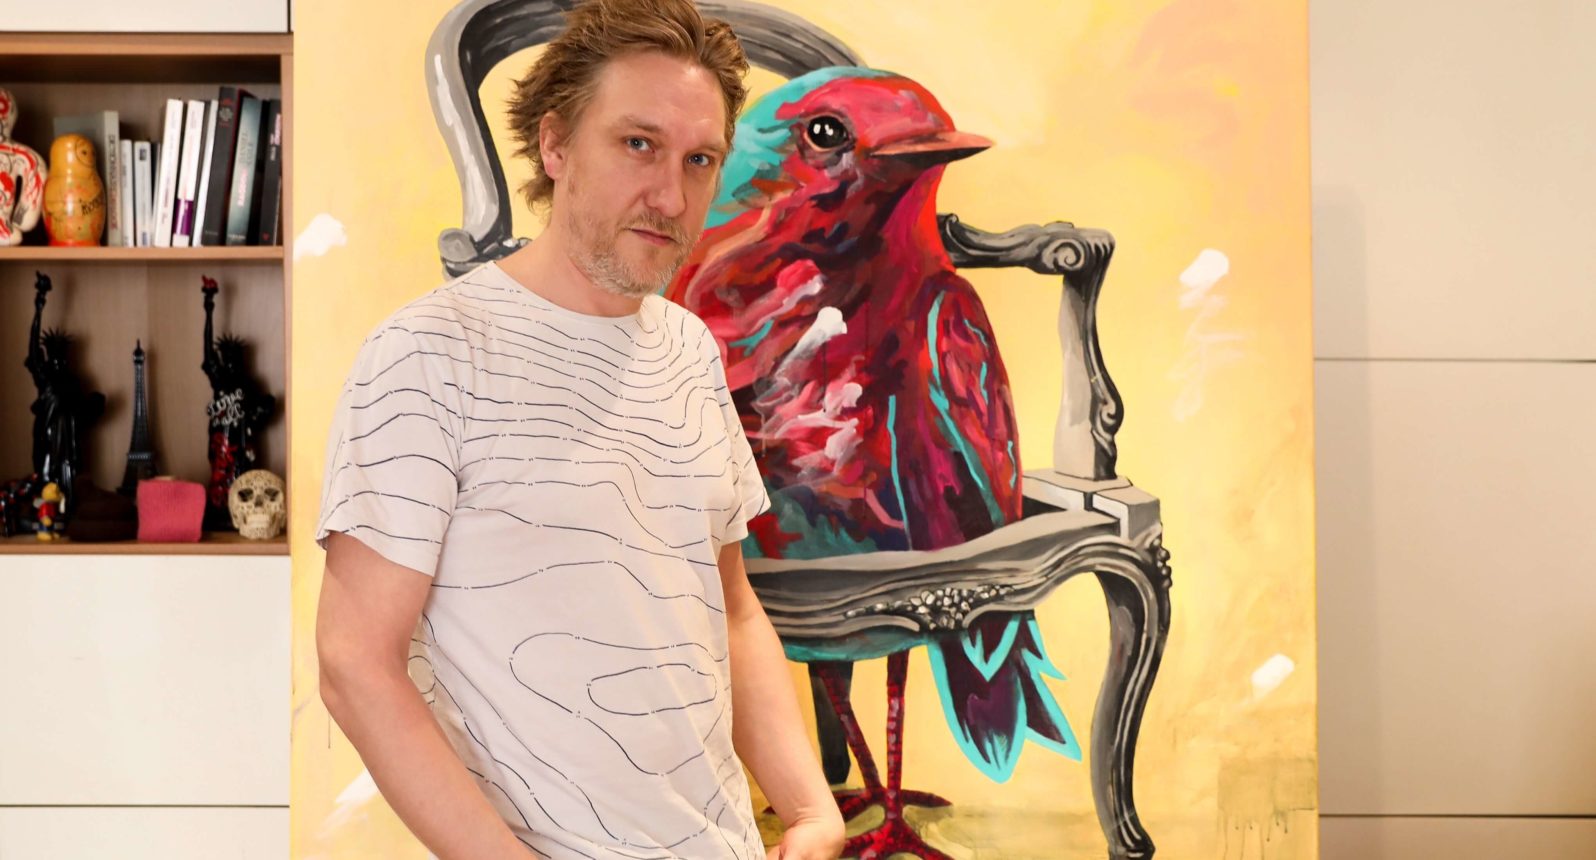 Interview d'Aksel Varichon, artiste peintre à Paris - Dialogue autour de son processus de création